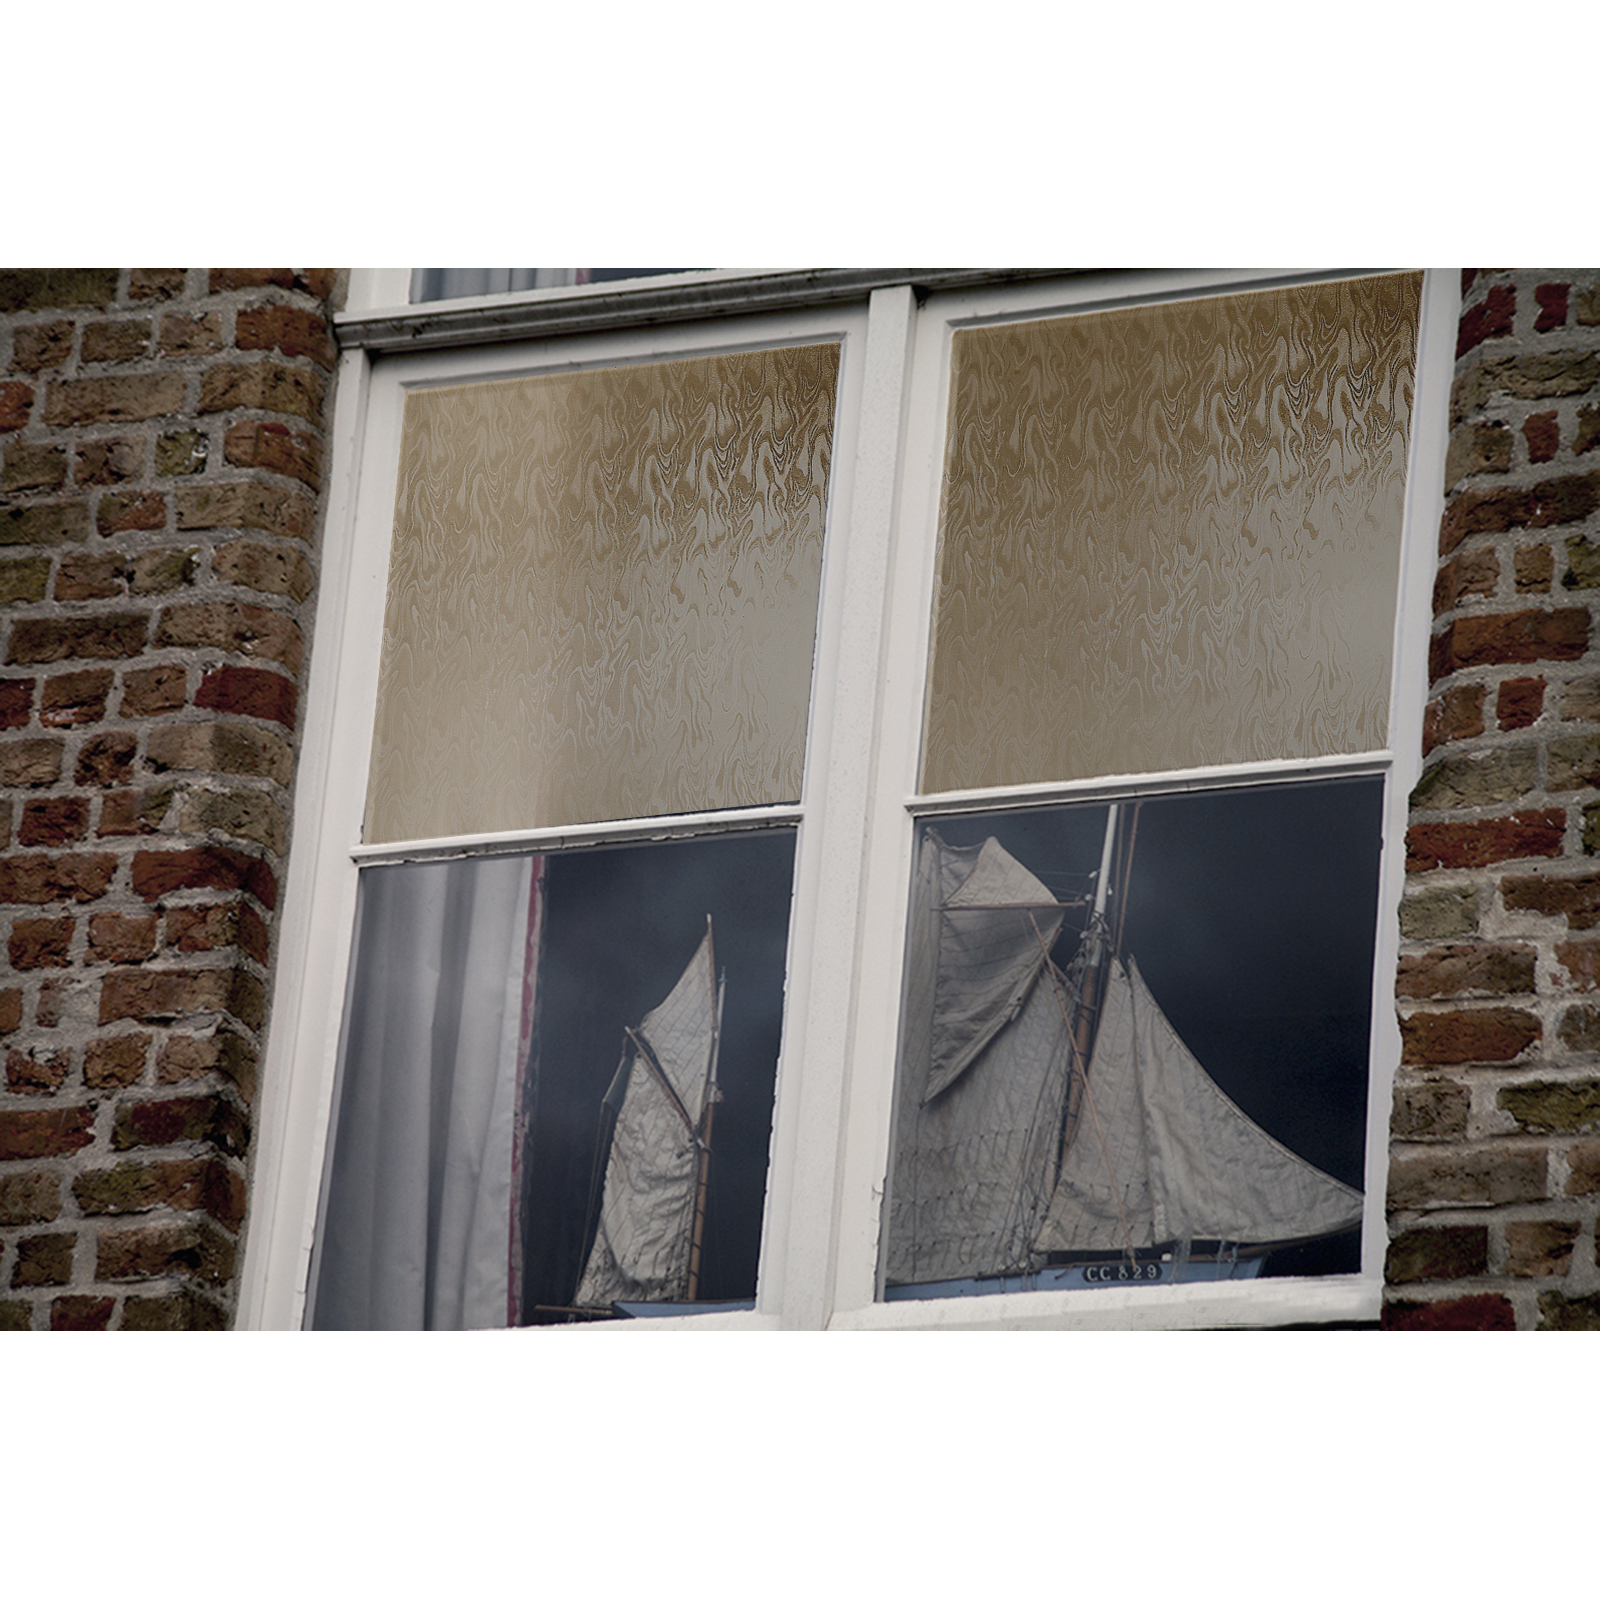 Fensterfolie Tulia 6,50€m² Selbstklebend Transparent Fenster Bunt  SichtschutzDIY